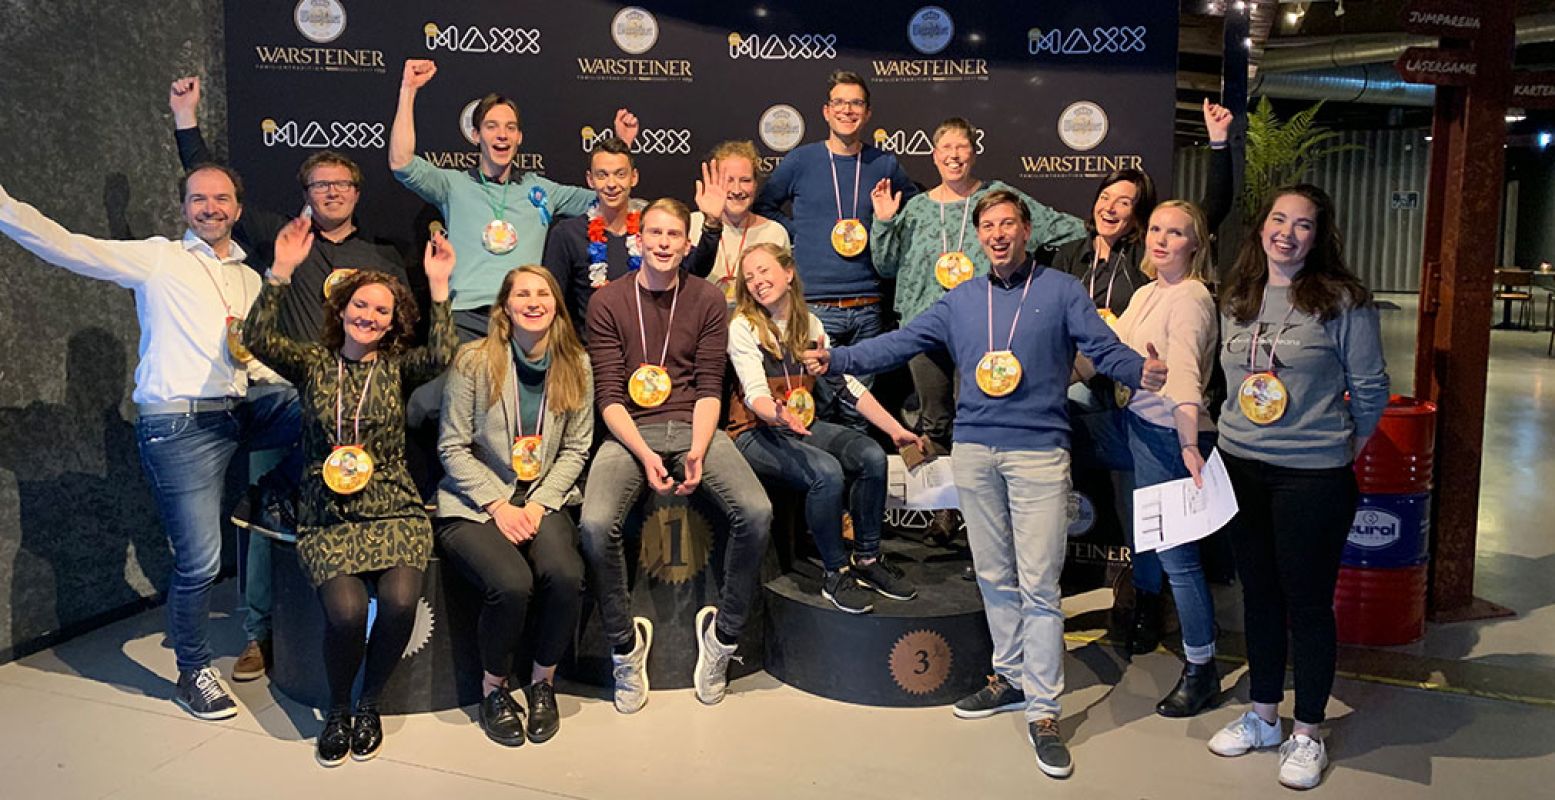 Leuk aandenken: The Maxx zet iedereen op de foto. Hier het enthousiaste team van DagjeWeg.NL. Foto: The Maxx